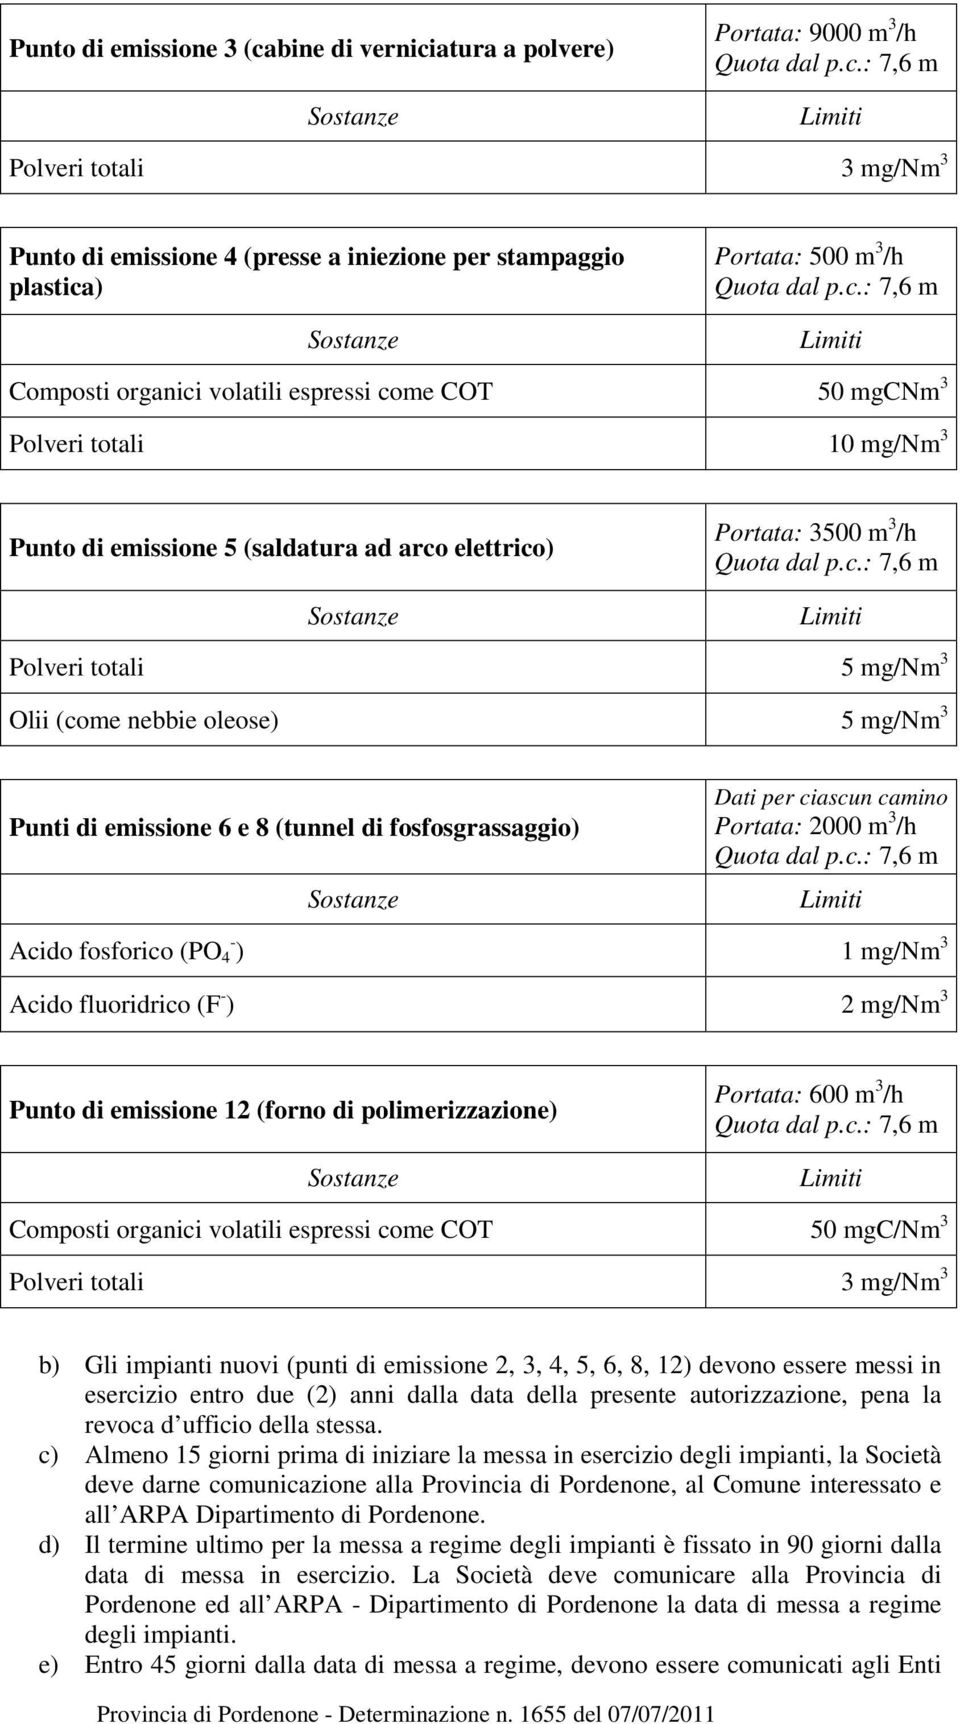 mg/nm 3 Punti di emissione 6 e 8 (tunnel di fosfosgrassaggio) Dati per ciascun camino Portata: 2000 m 3 /h Acido fosforico (PO 4 - ) 1 mg/nm 3 Acido fluoridrico (F - ) 2 mg/nm 3 Punto di emissione 12